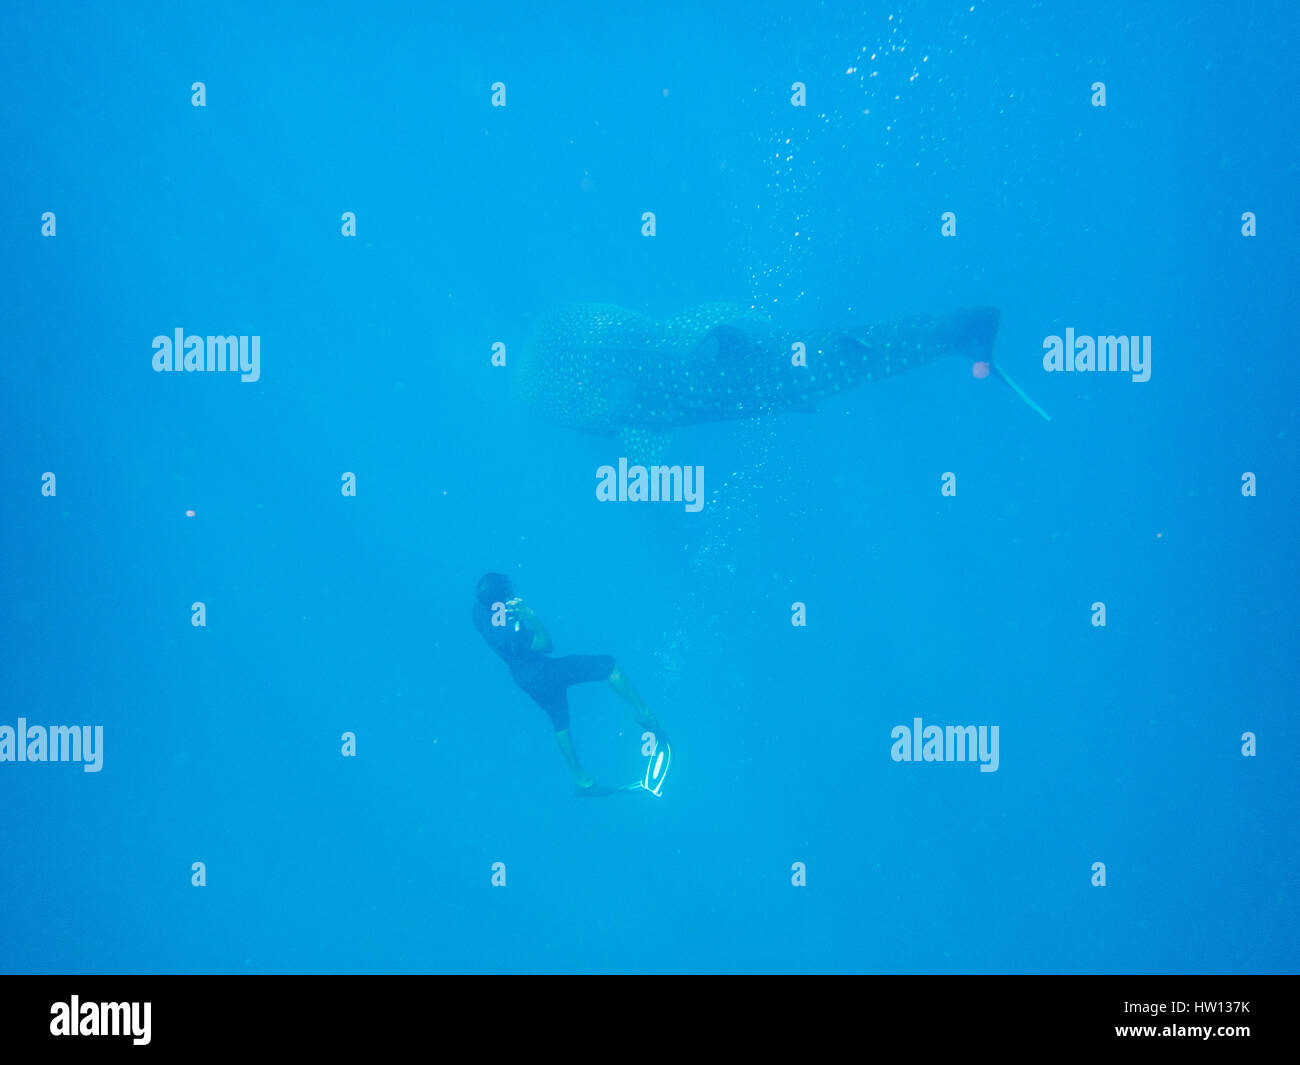 Maldive Rangali Island. Conrad Hilton Resort. Nuoto con gli squali balena, il più grande pesce del mare. Foto Stock